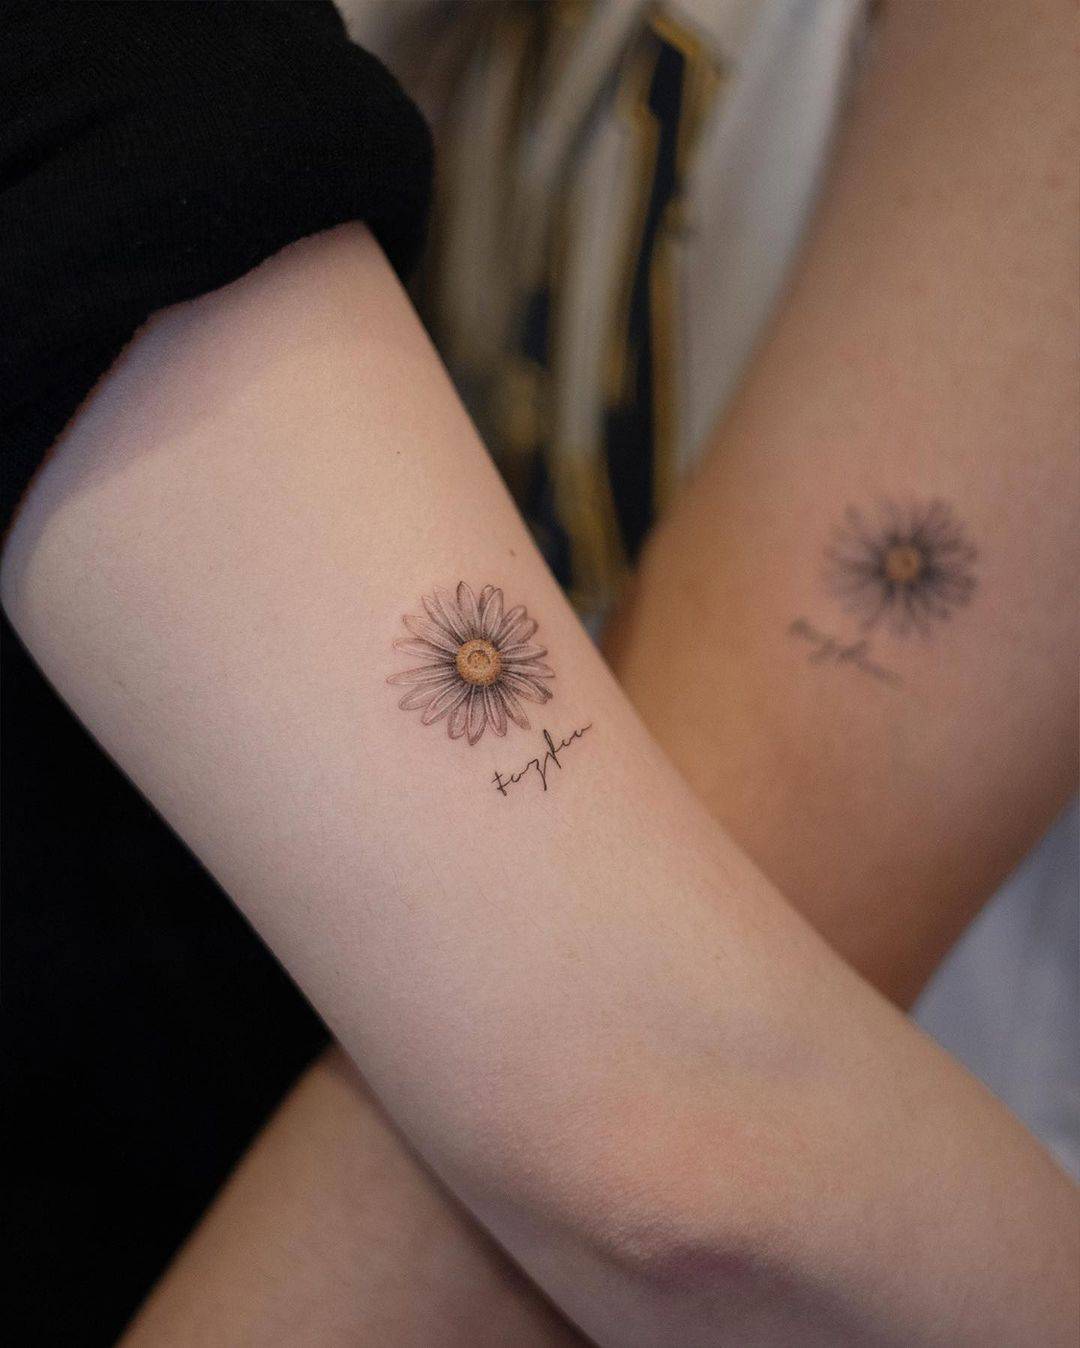 Daisy tattoo by handitrip